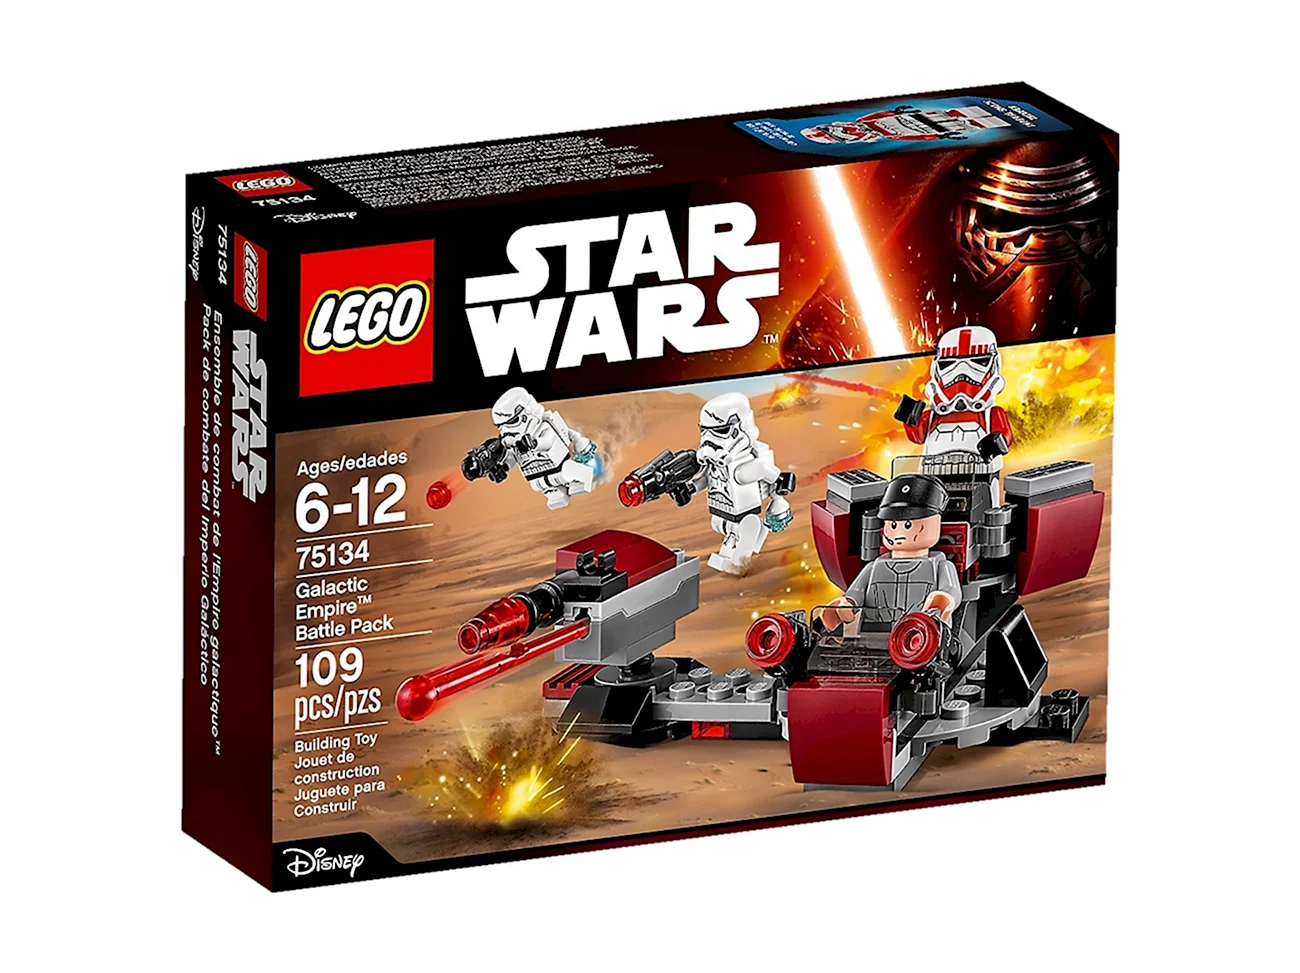 Конструктор LEGO Star Wars 75134 боевой набор Галактической империи. Картинка